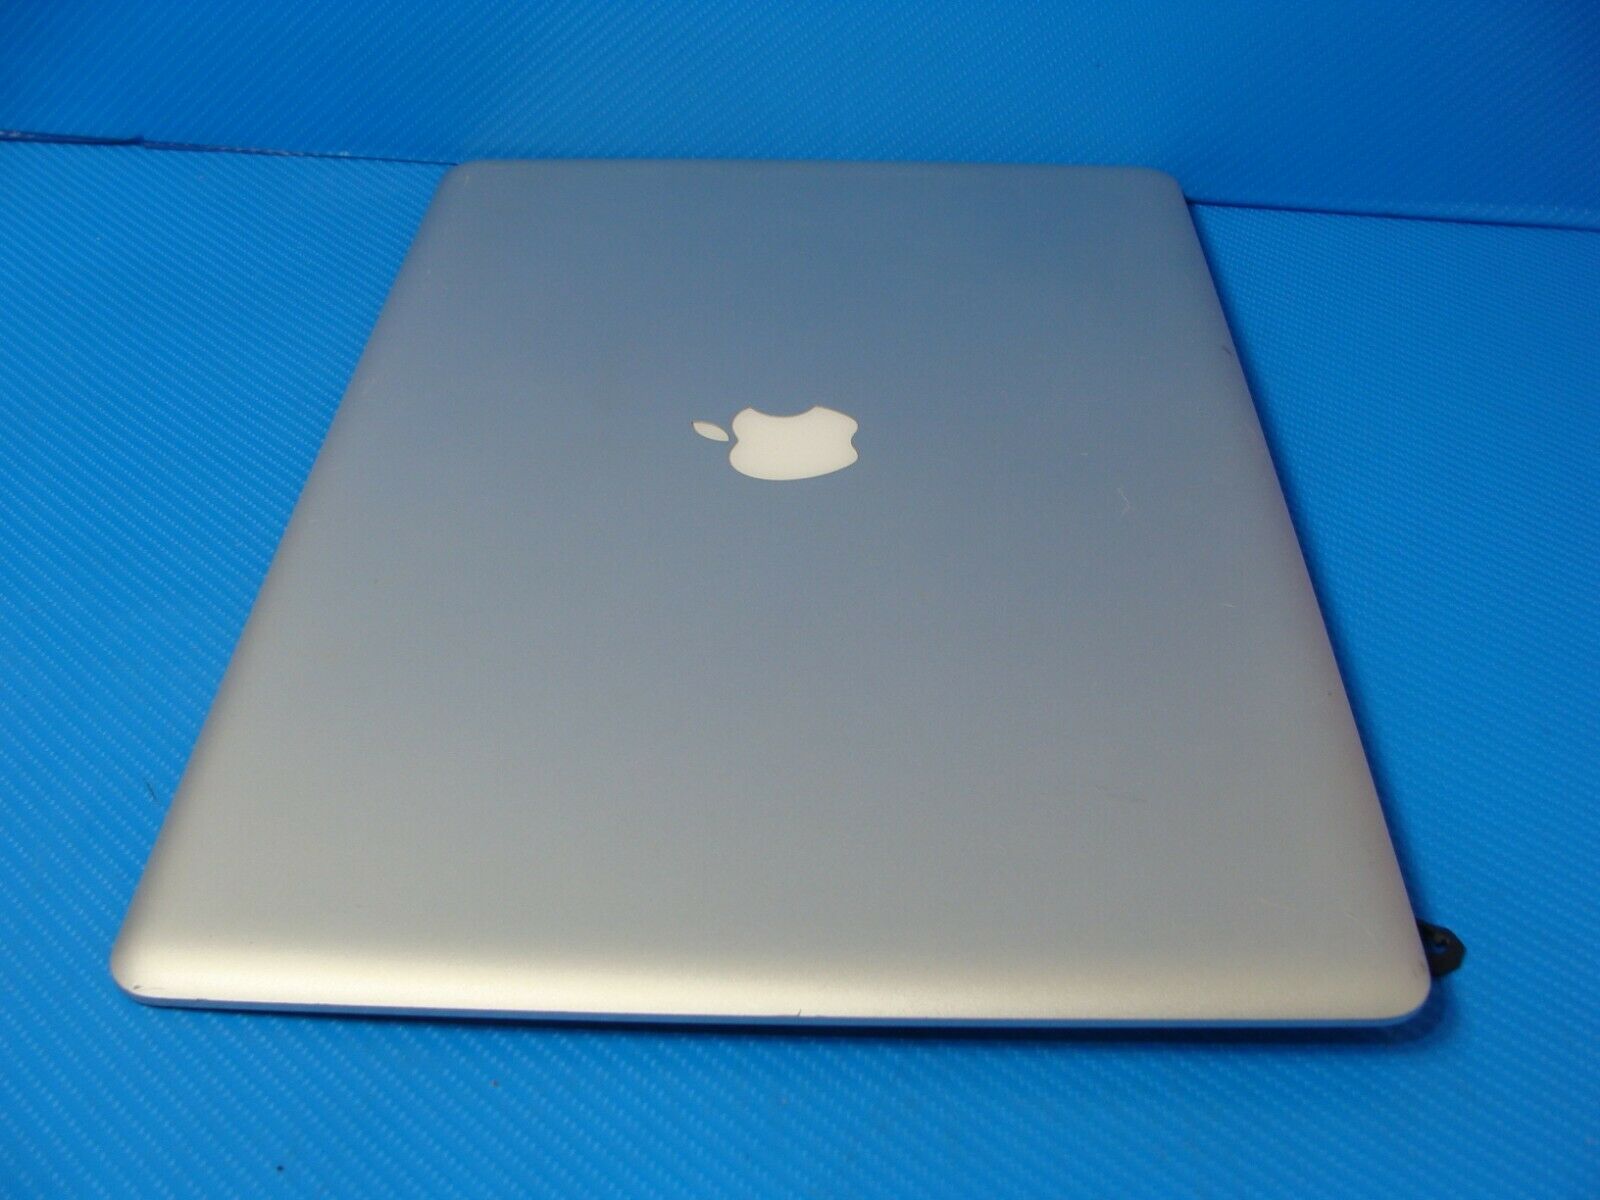 MacBook Pro 17